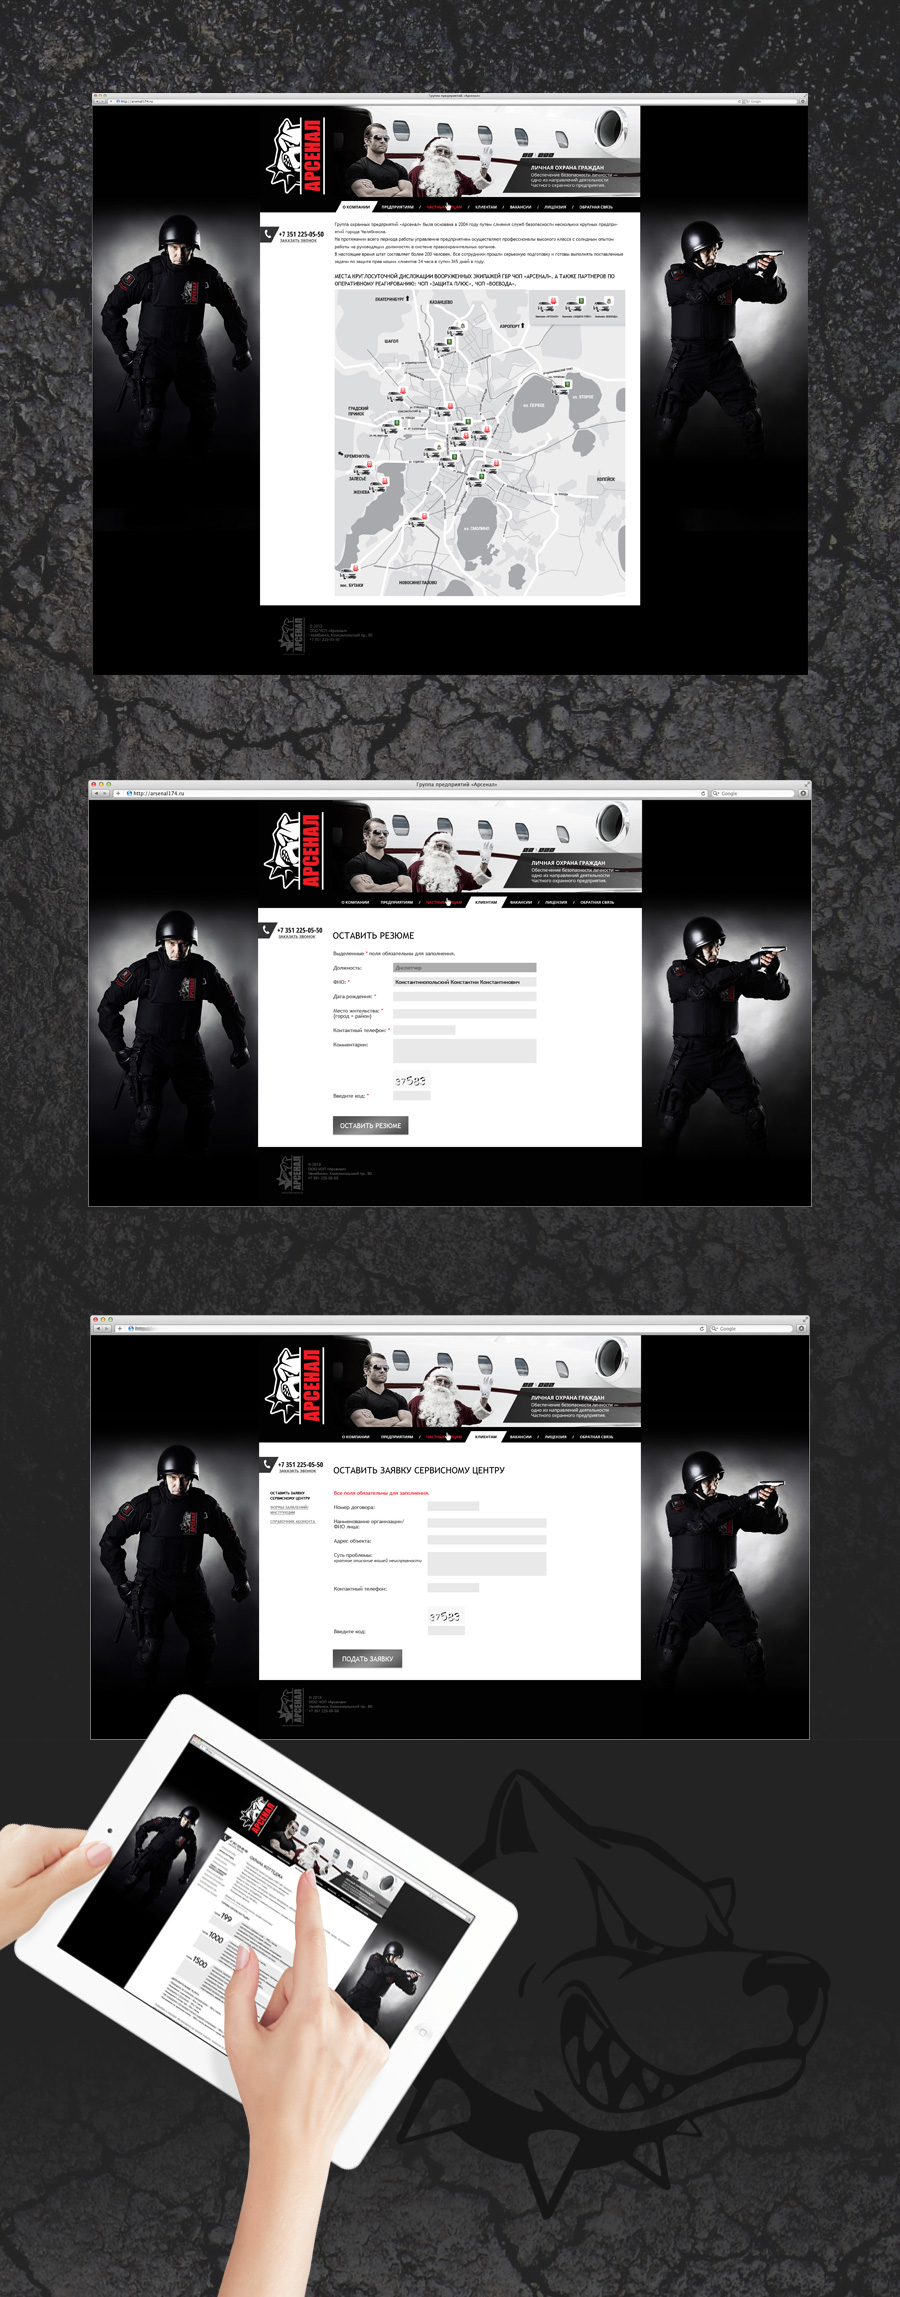 Примеры разных экранов фирменного сайта охранного предприятия Арсенал, разработанного нами